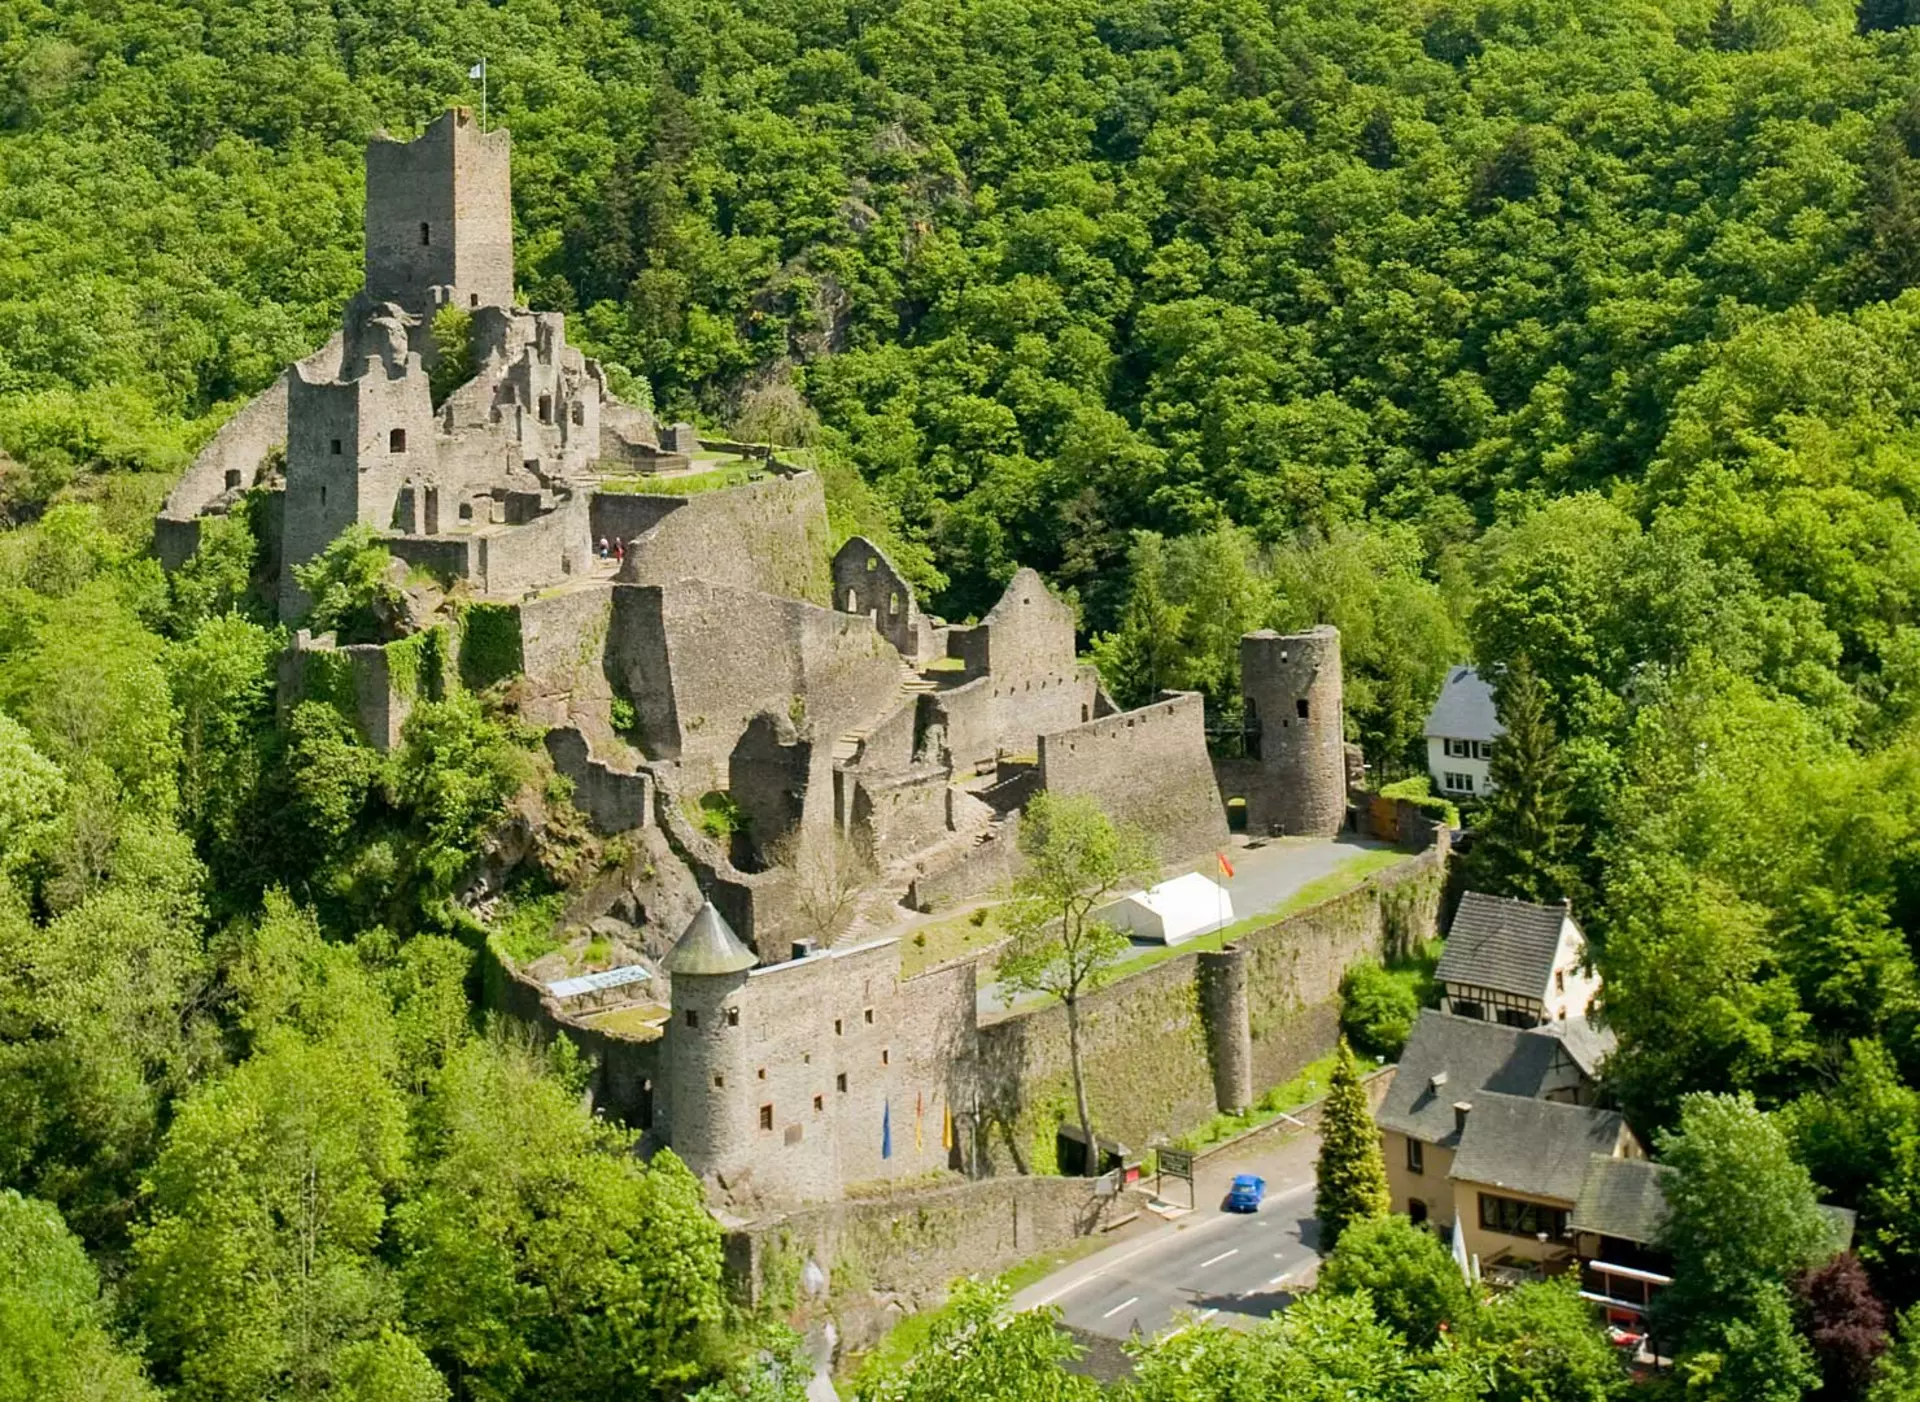 im Urlaub in der Eifel die Manderscheider, die Ruinen zweier Burgen nahe der Eifelstadt Manderscheid, besuchen